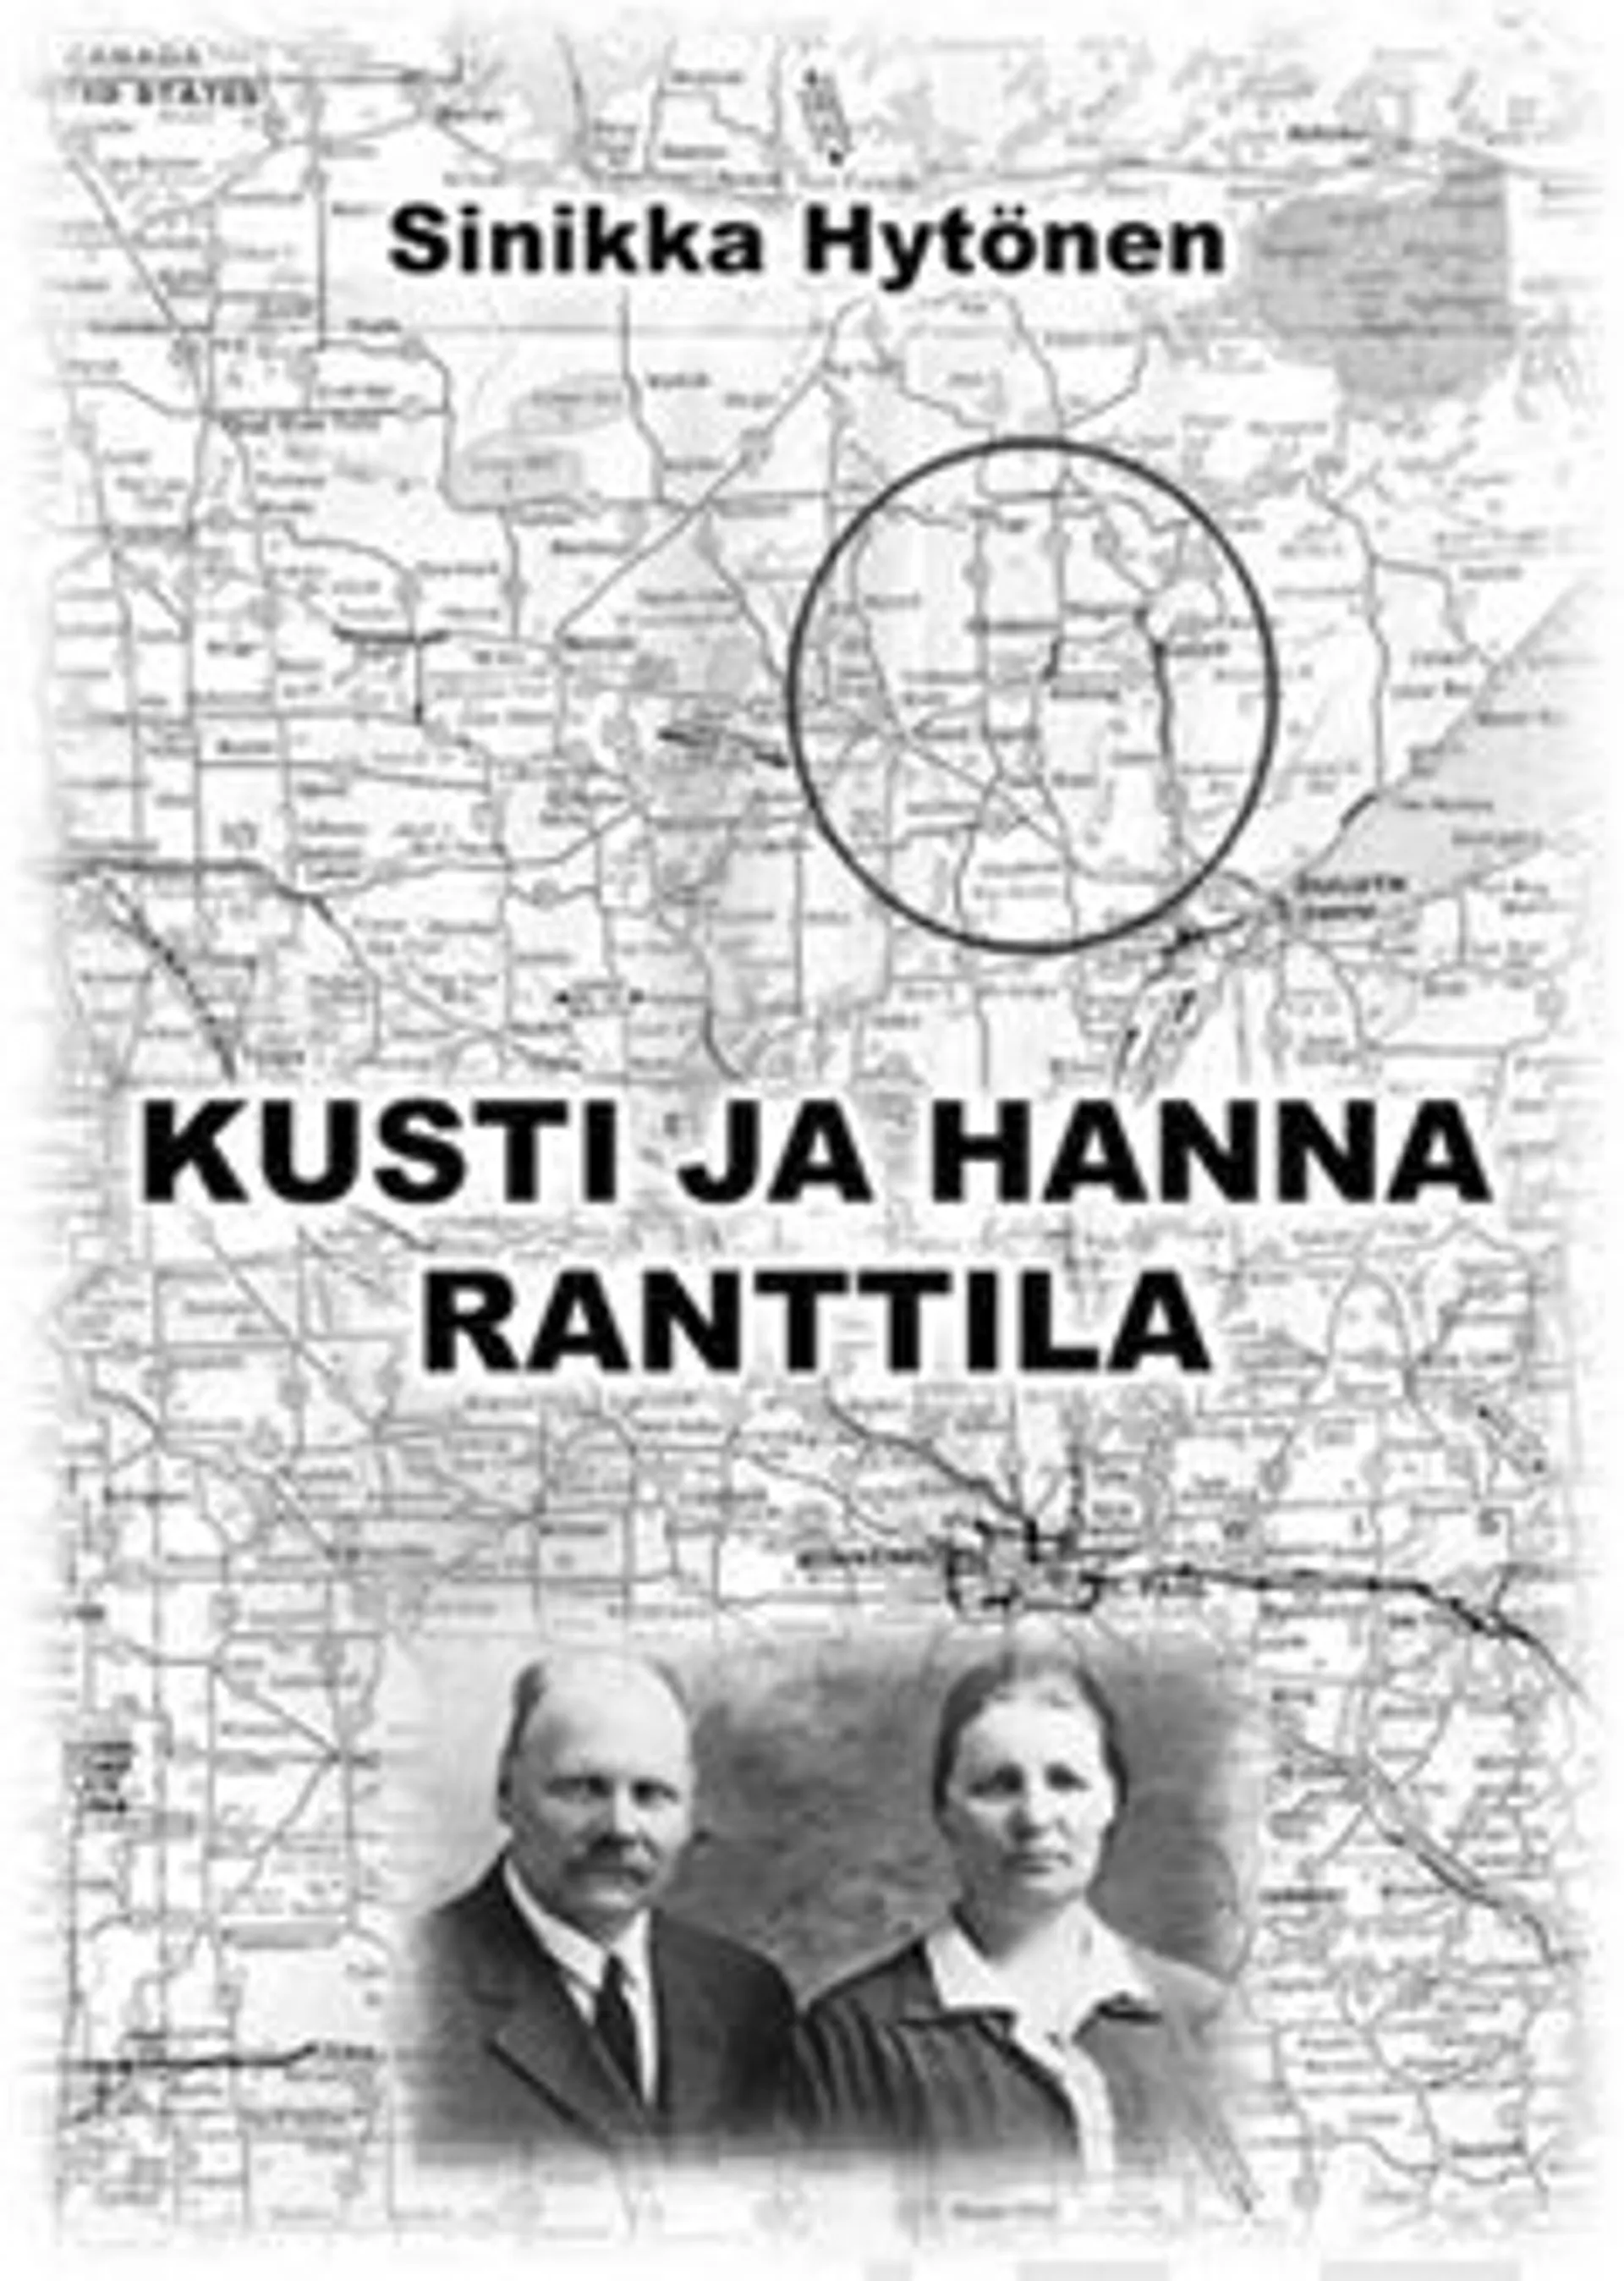 Hytönen, Kusti ja Hanna Ranttila